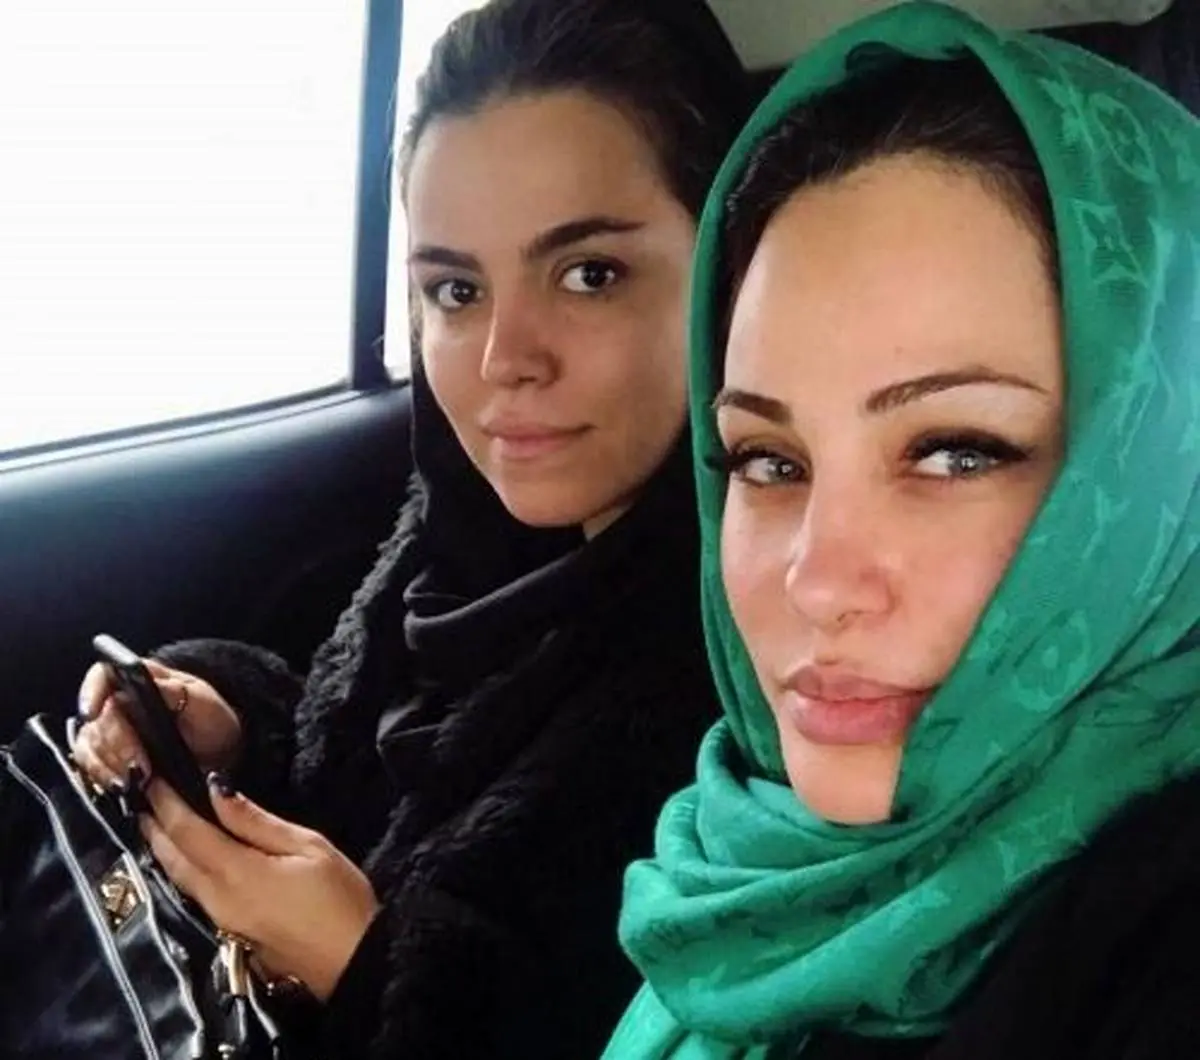 آنجلینا جولی در تهران | مصاحبه تصوری با آنجلینا جولی